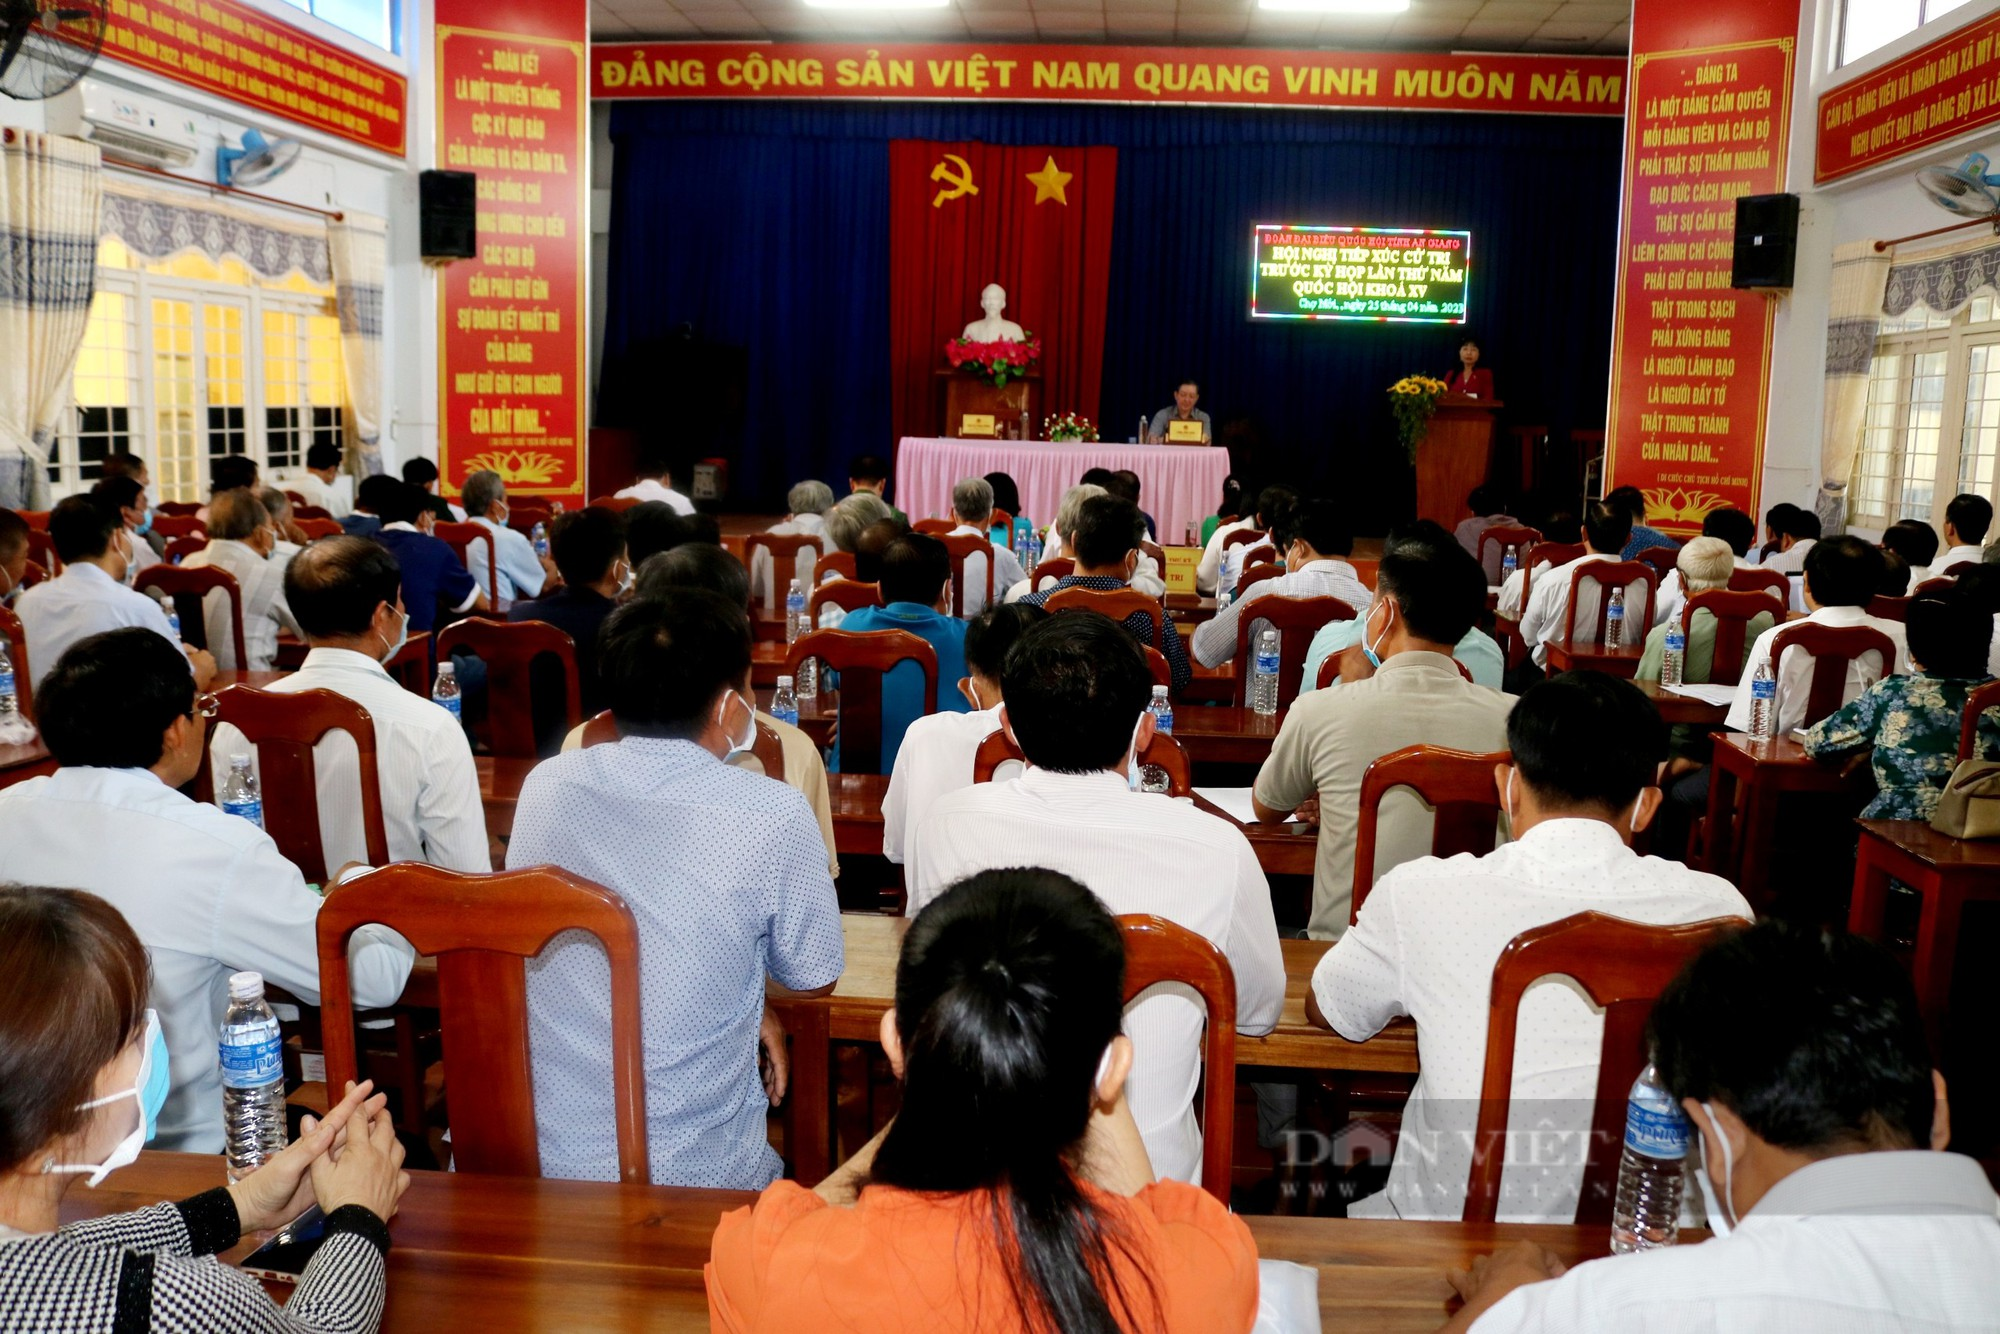 Chủ tịch Hội NDVN và đoàn đại biểu Quốc hội tỉnh An Giang tiếp xúc cử tri thuyện Chợ Mới - Ảnh 5.